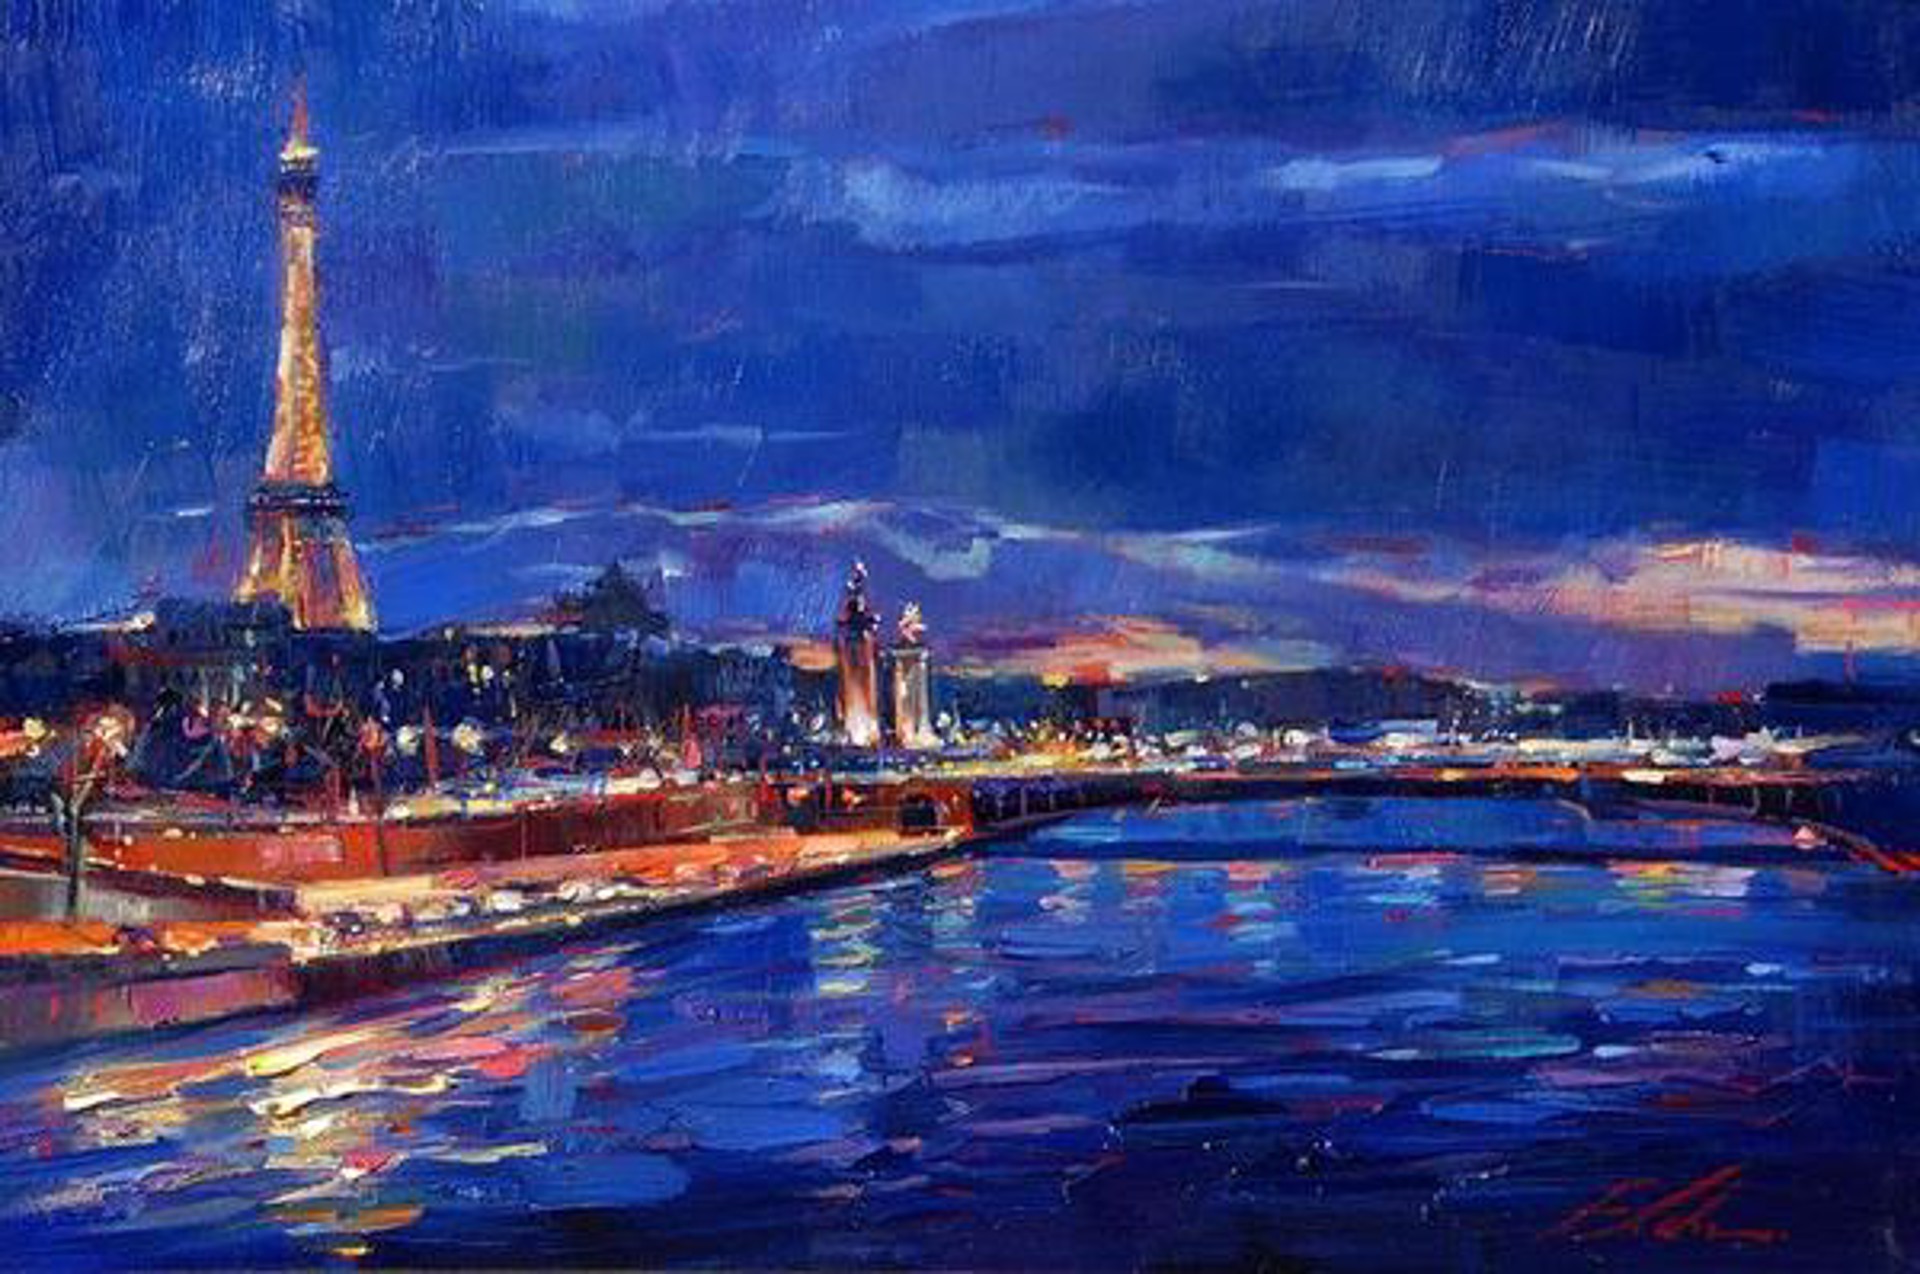 Midnight in Paris by Michael Flohr